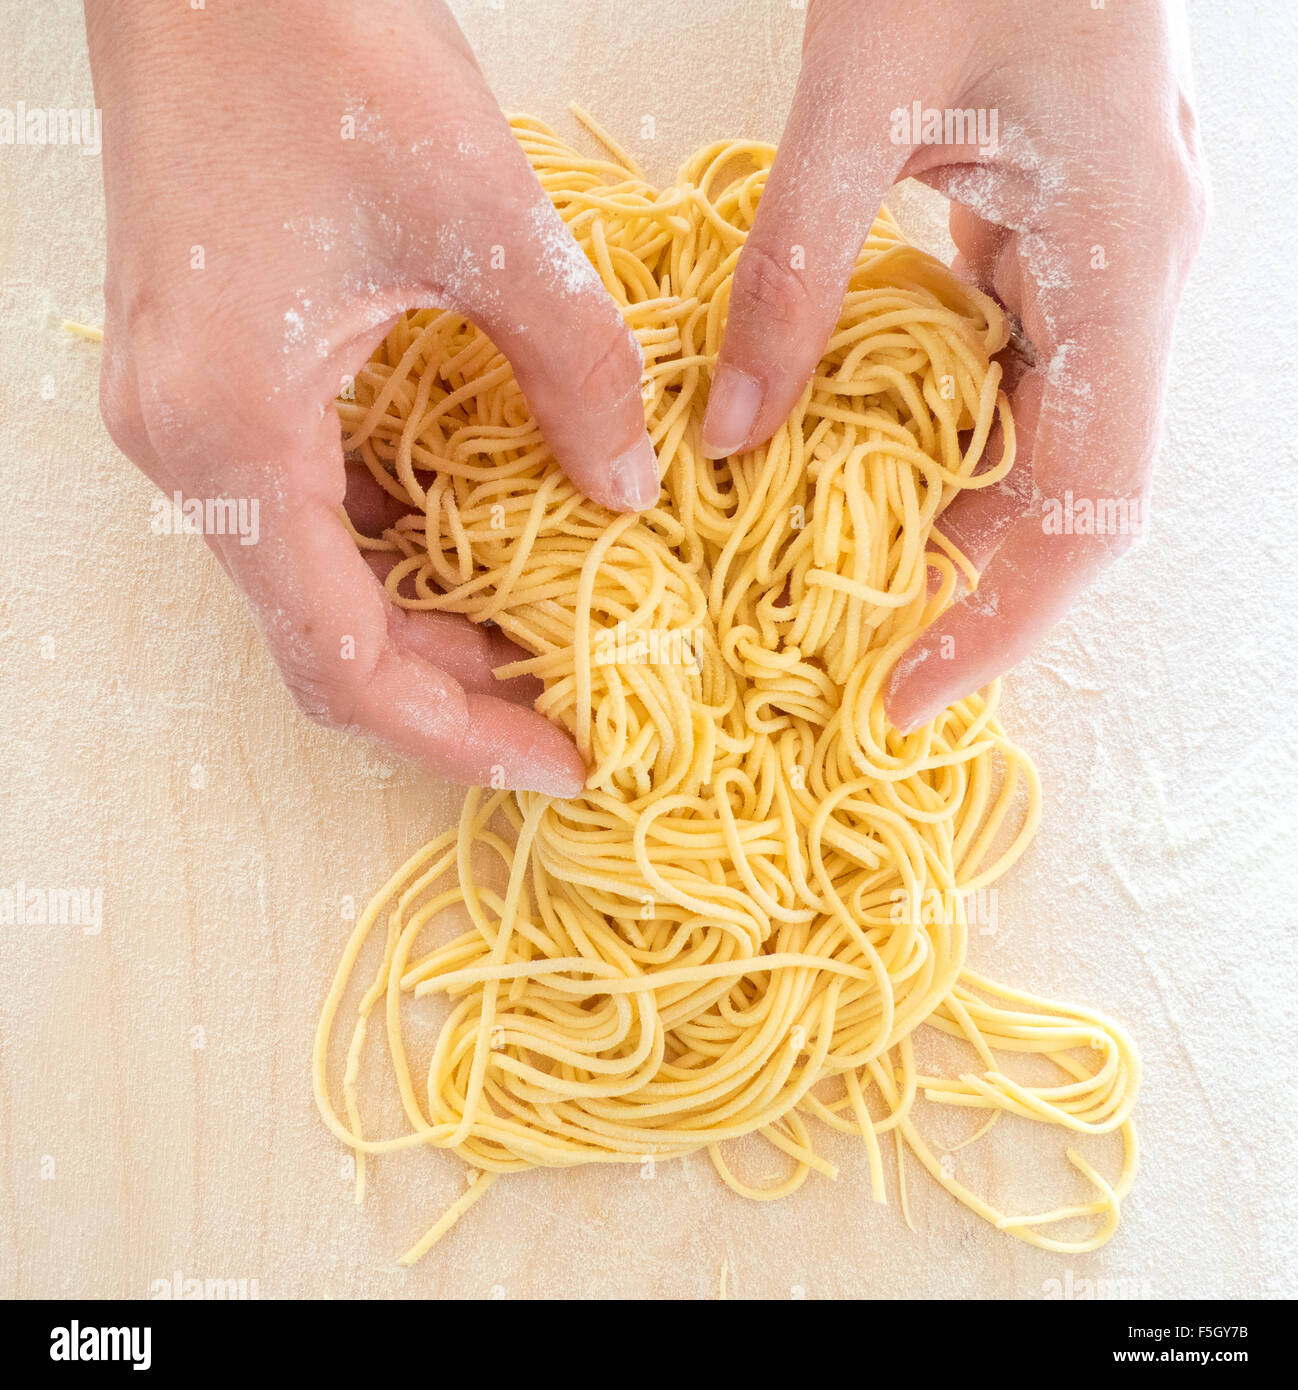 Frau Hände arbeiten zu Hause gemachte Spaghetti mit Mehl und Eiern auf einem Holztisch Stockfoto